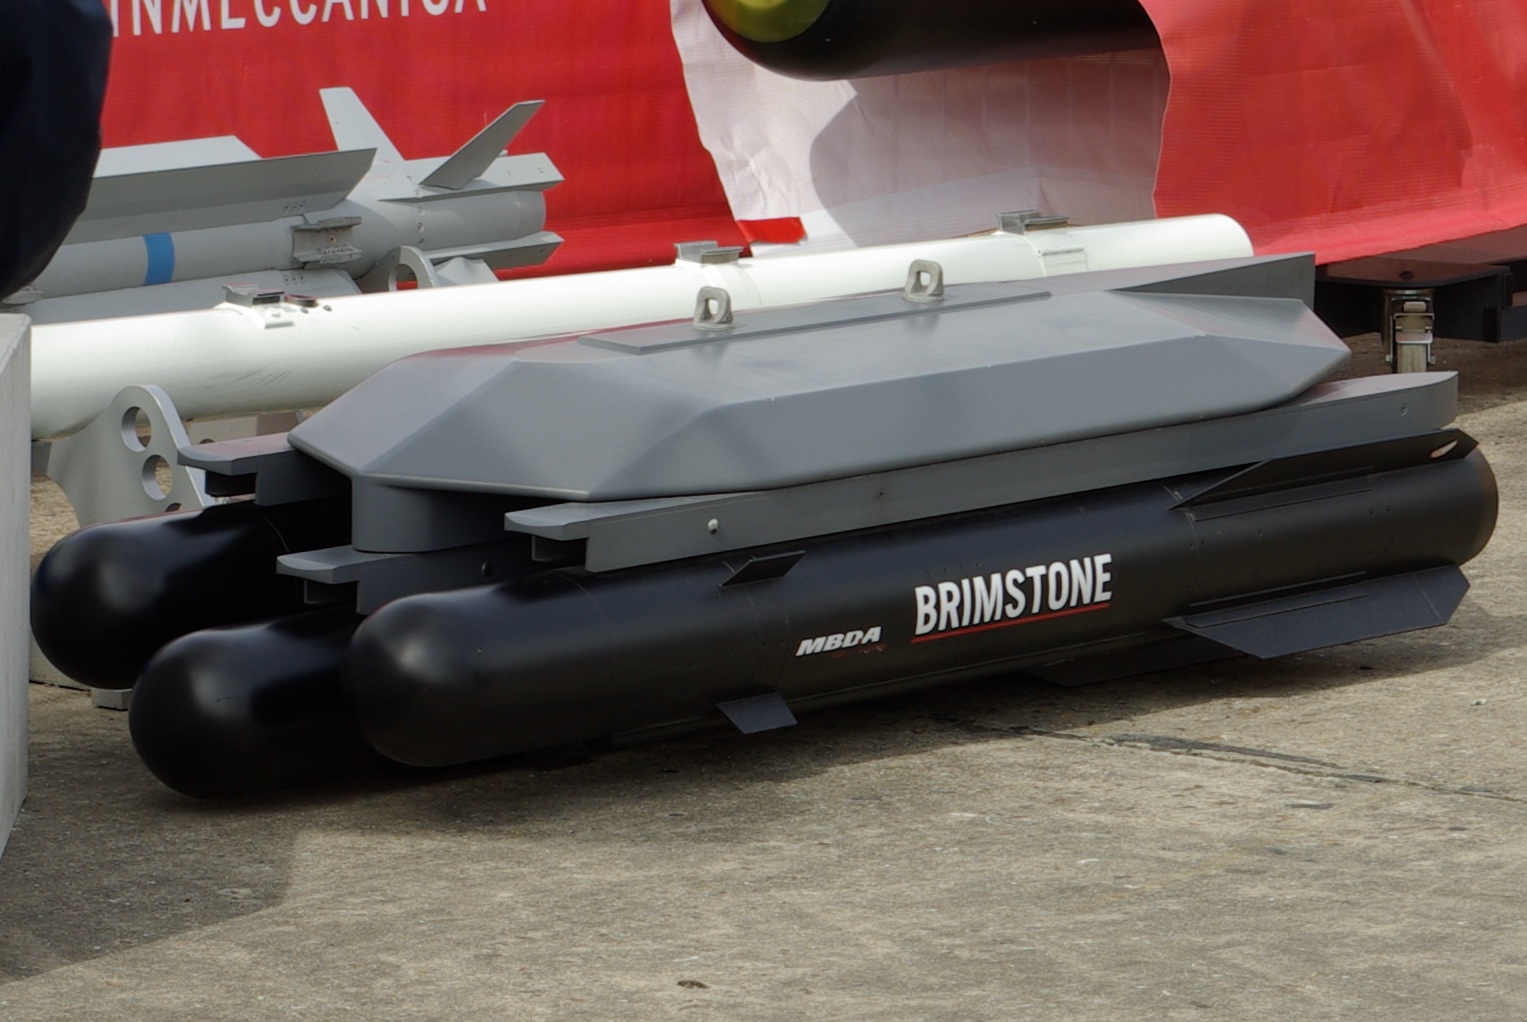 La première vidéo du lancement de missiles britanniques Brimstone dans la modification "sol-sol" est apparue en ligne